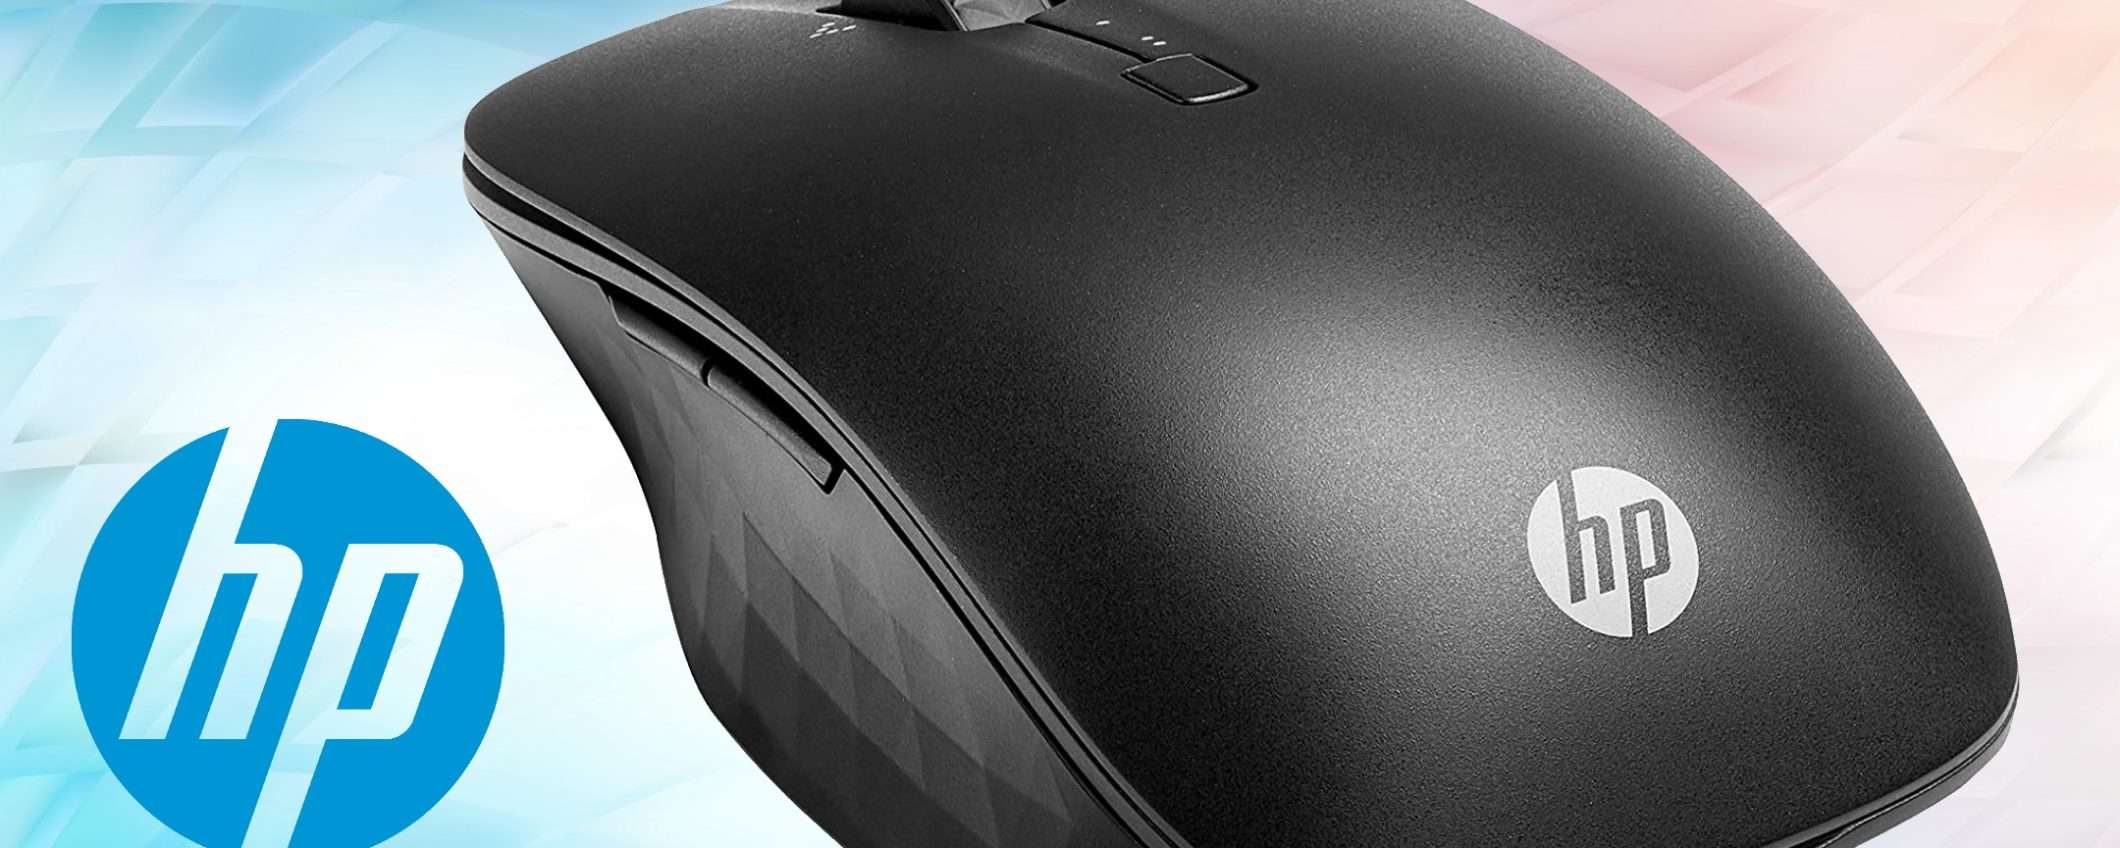 HP Travel Mouse: il migliore per lavorare in mobilità a metà prezzo